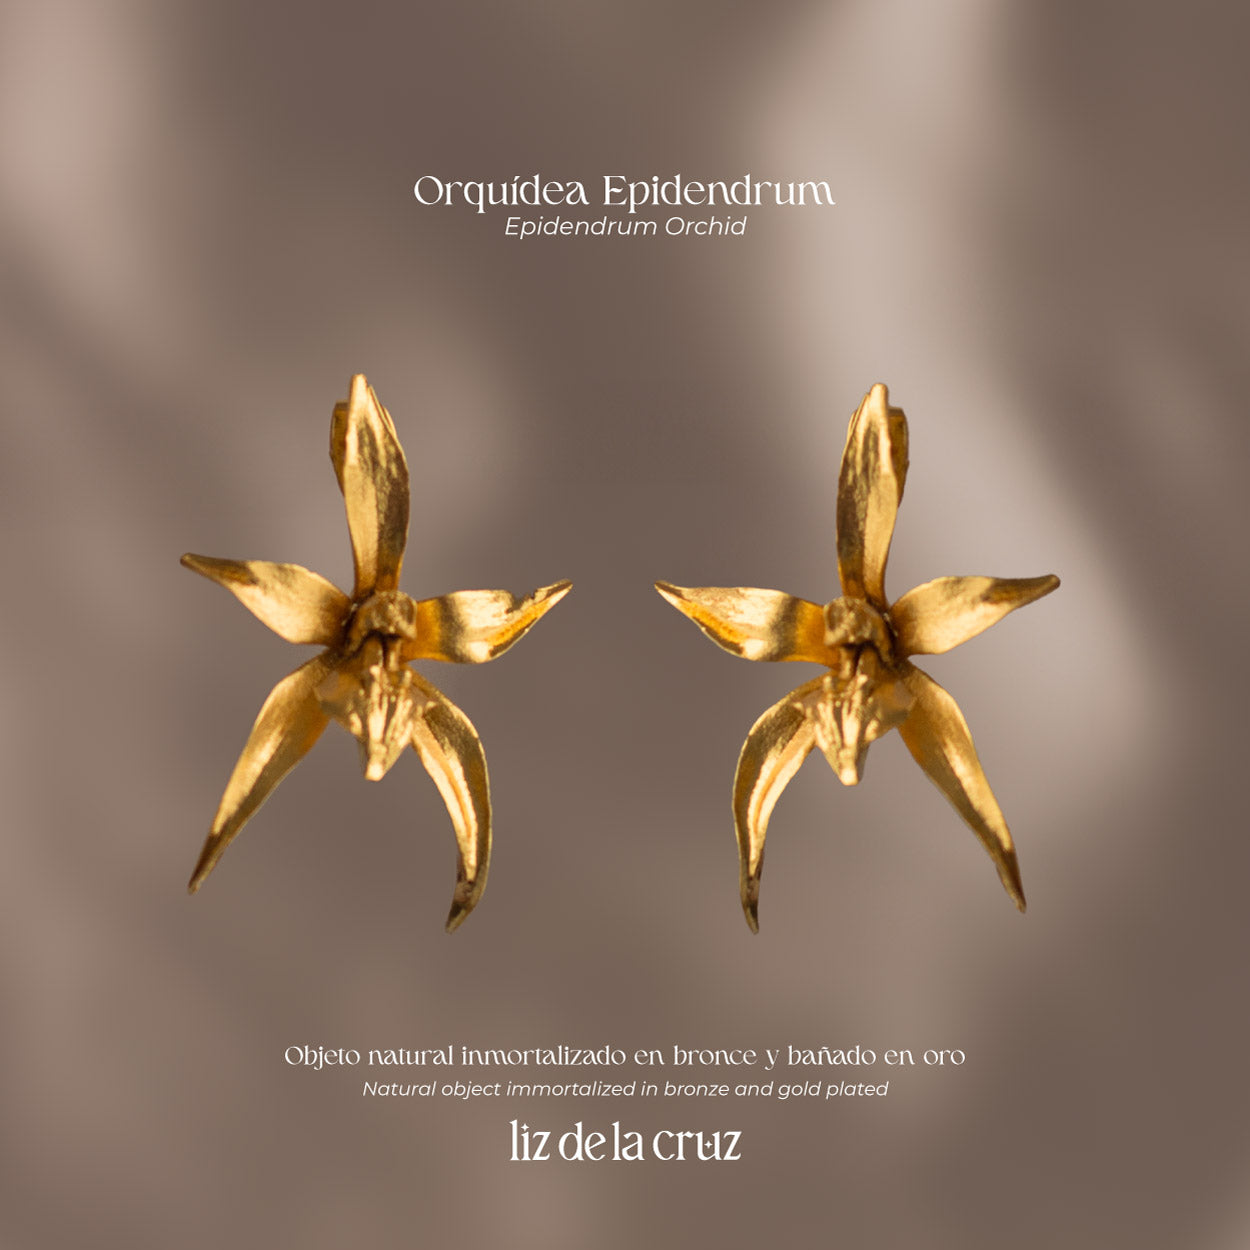 Aretes de Orquidea Epidendrum artesanales en bronce enchapado en oro de 24k, capturando la inigualable belleza de la flor natural